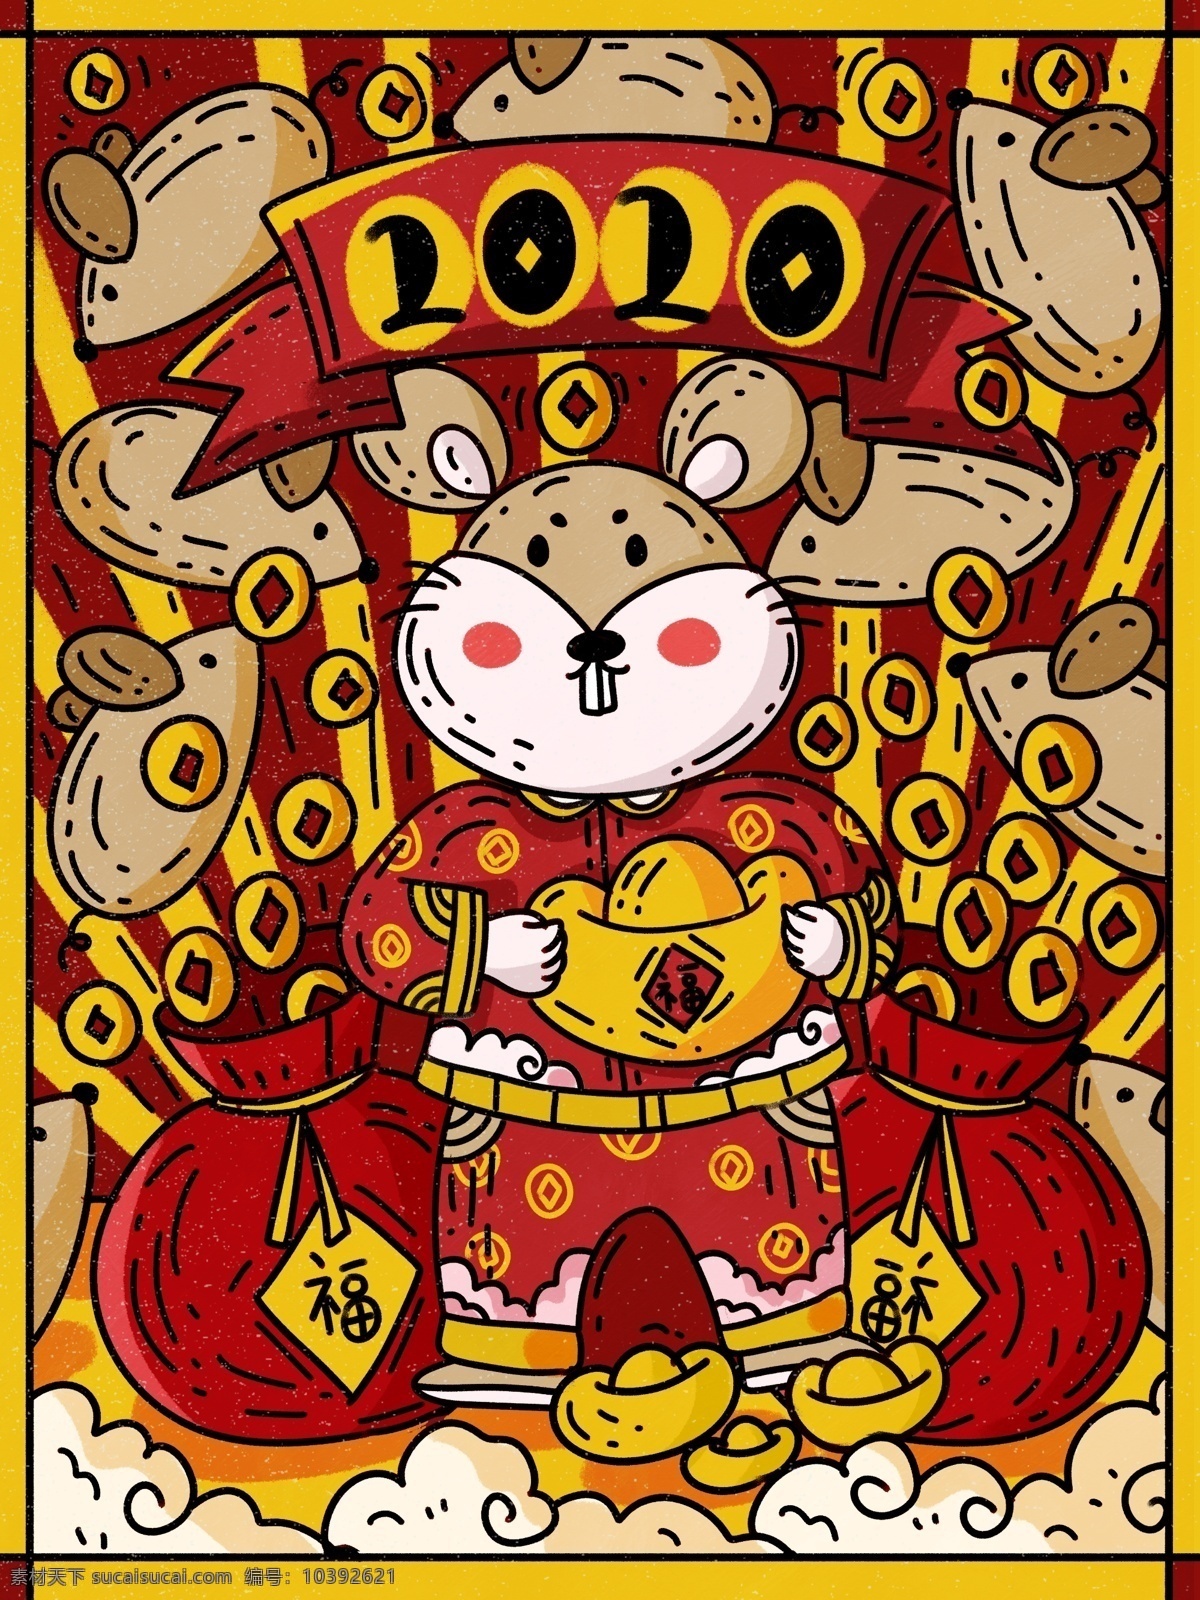 新年 好 鼠年 快乐 2020 年 红包 金币 满天飞 创意 老鼠 元宝 新年快乐 电商海报 恭喜发财 卡通 可爱 节日节气